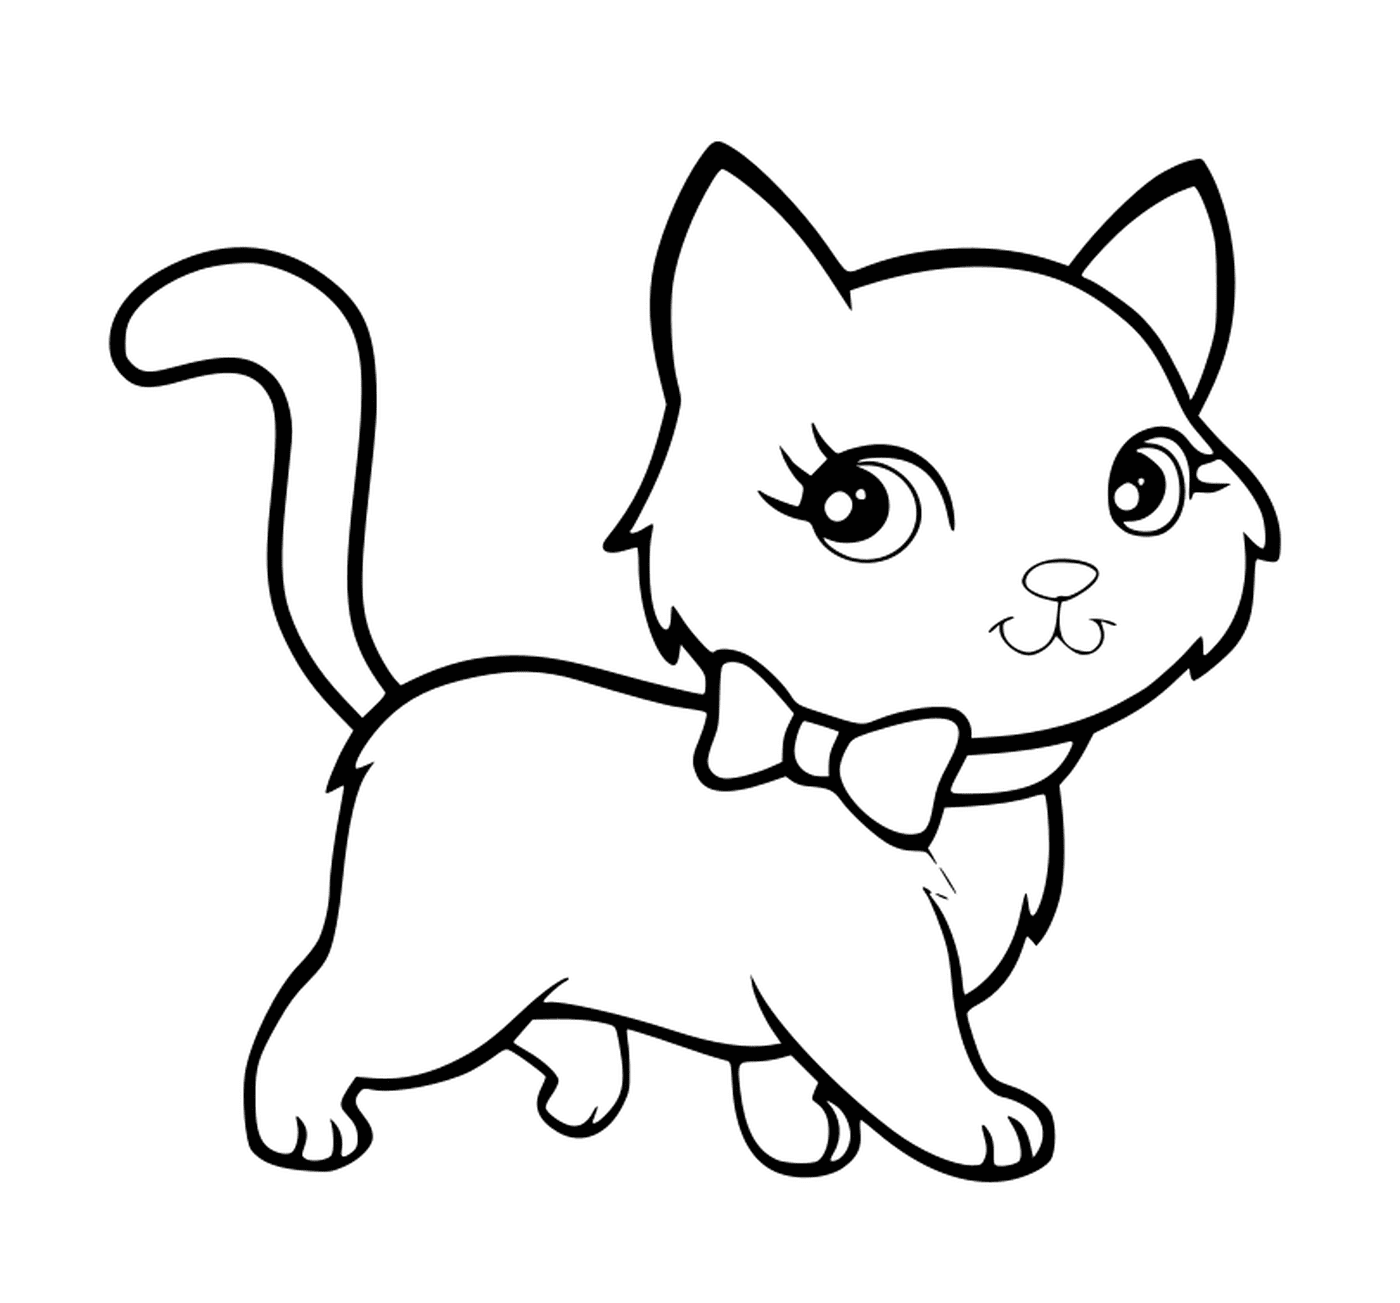   Un chat kawaii super mignon marchant de manière élégante 